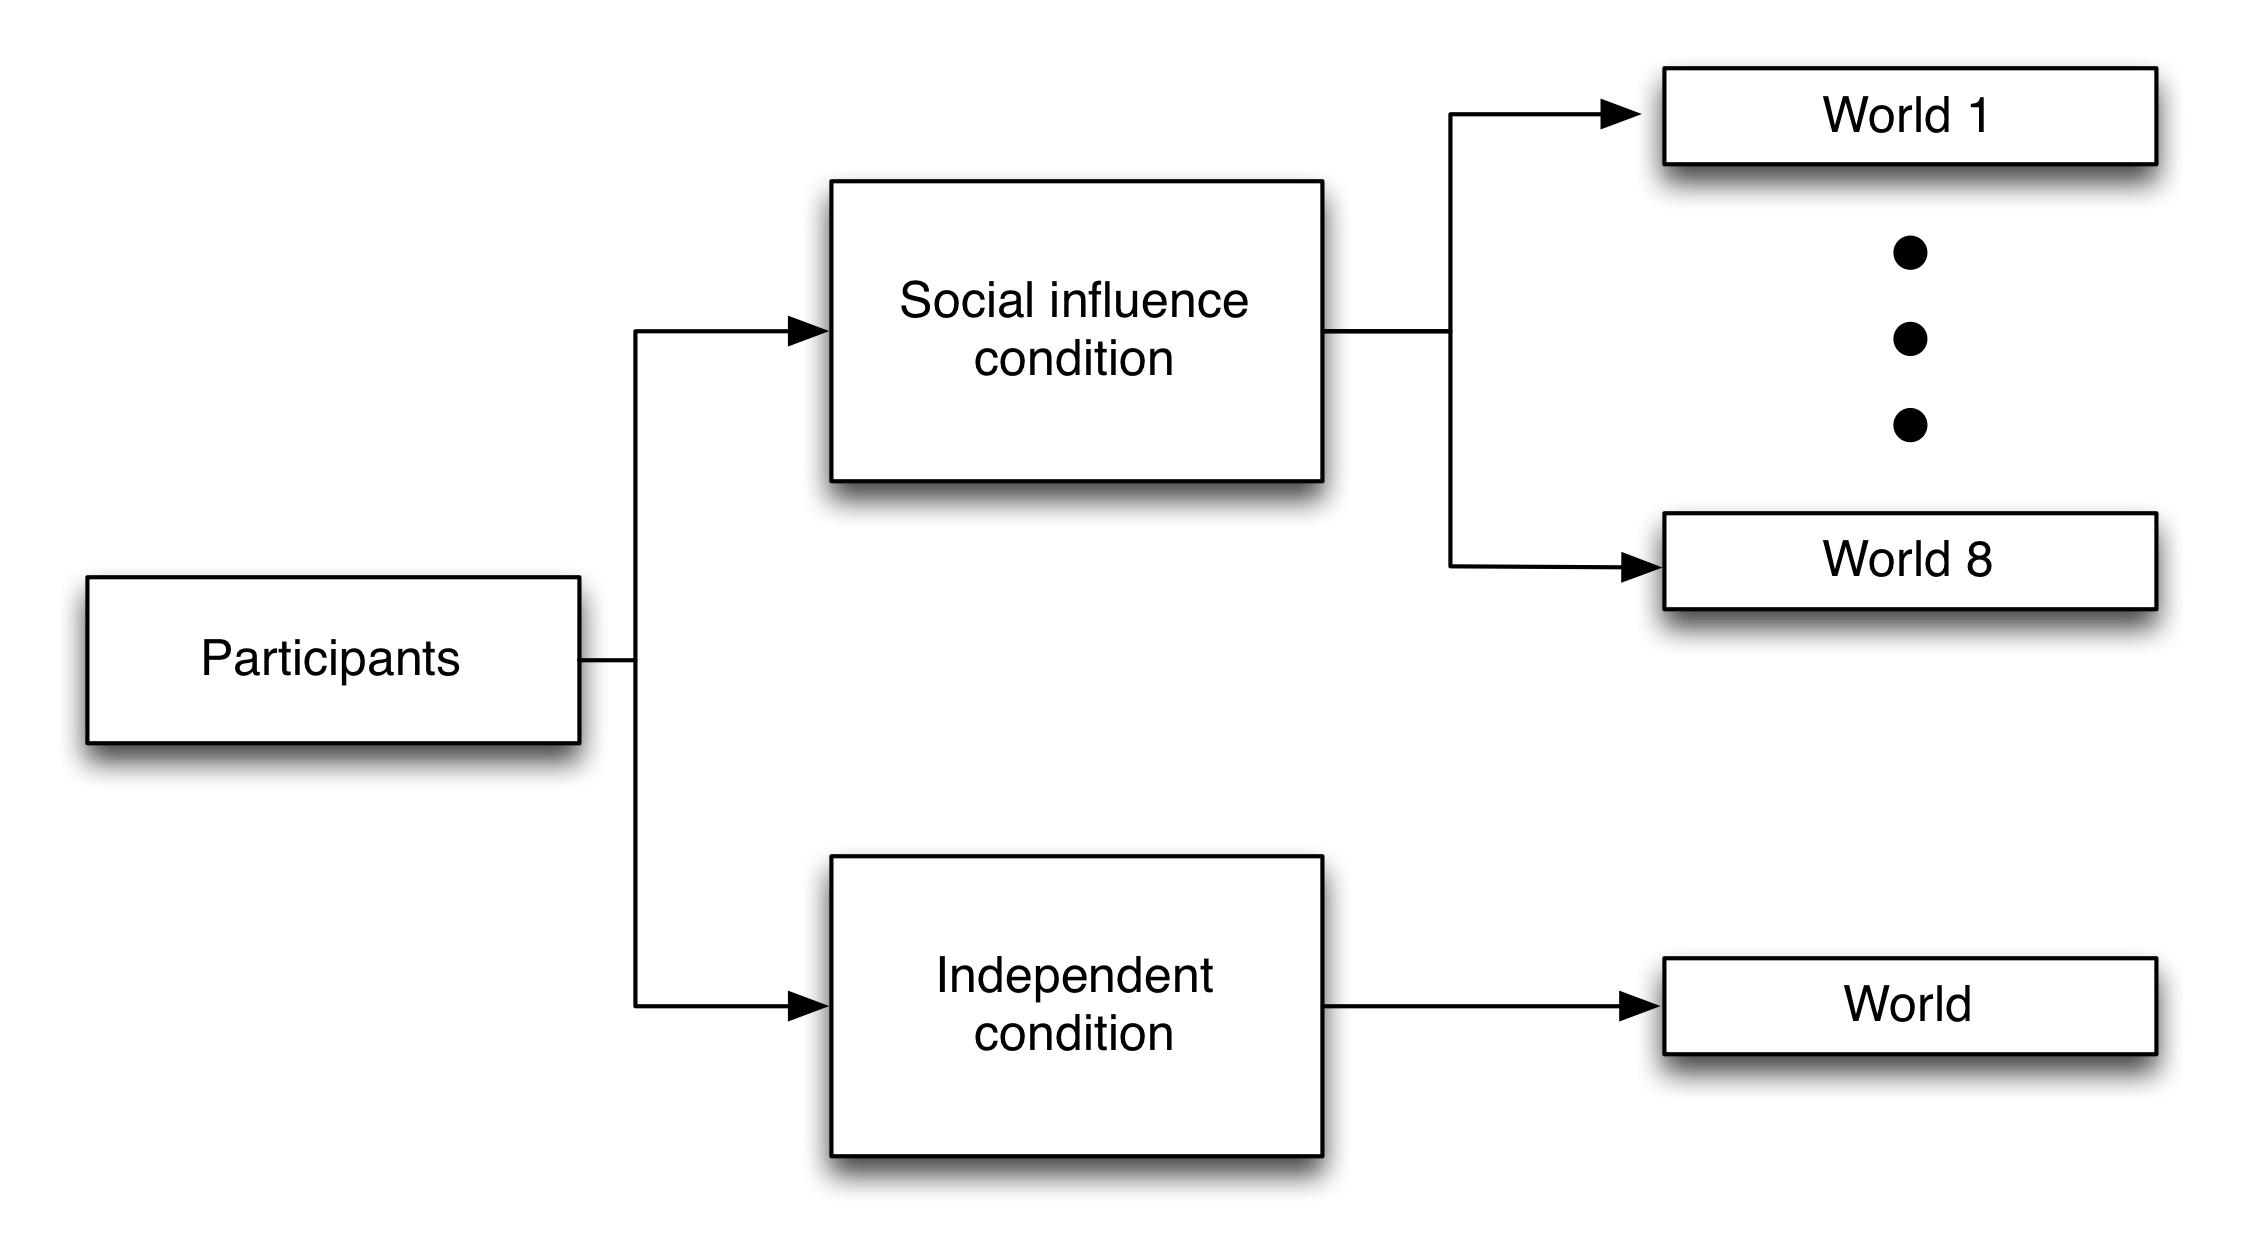 Obrázek 4.21: Experimentální návrh experimentů MusicLab (Salganik, Dodds a Watts 2006). Účastníci byli náhodně zařazeni do jedné ze dvou podmínek: nezávislý a společenský vliv. Účastníci nezávislého stavu rozhodovali bez informací o tom, co ostatní lidé udělali. Účastníci sociálního vlivu byli náhodně zařazeni do jednoho z osmi paralelních světů, kde mohli vidět popularitu - jak měřily stahování předchozích účastníků - každé písně ve svém světě, ale nemohly vidět žádné informace o tom ani oni dokonce vědět o existenci některého z ostatních světů. Přizpůsoben od Salganik, Dodds a Watts (2006), číslo s1.